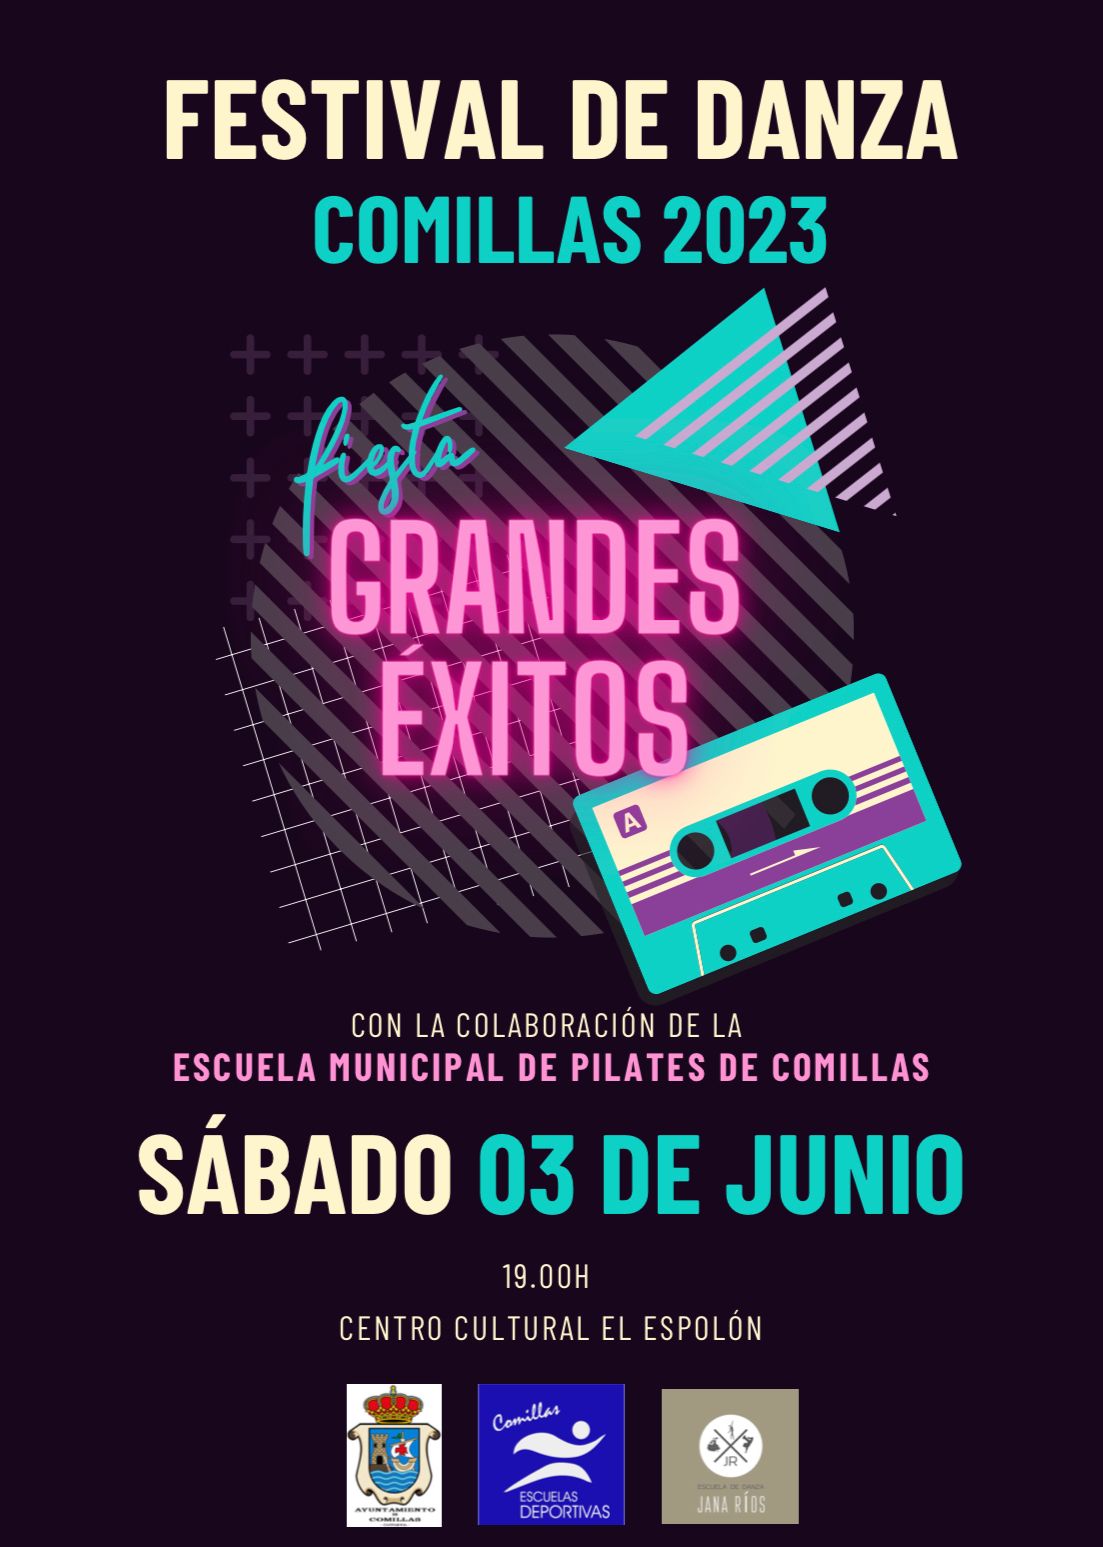 FESTIVAL DE DANZA COMILLAS 2023